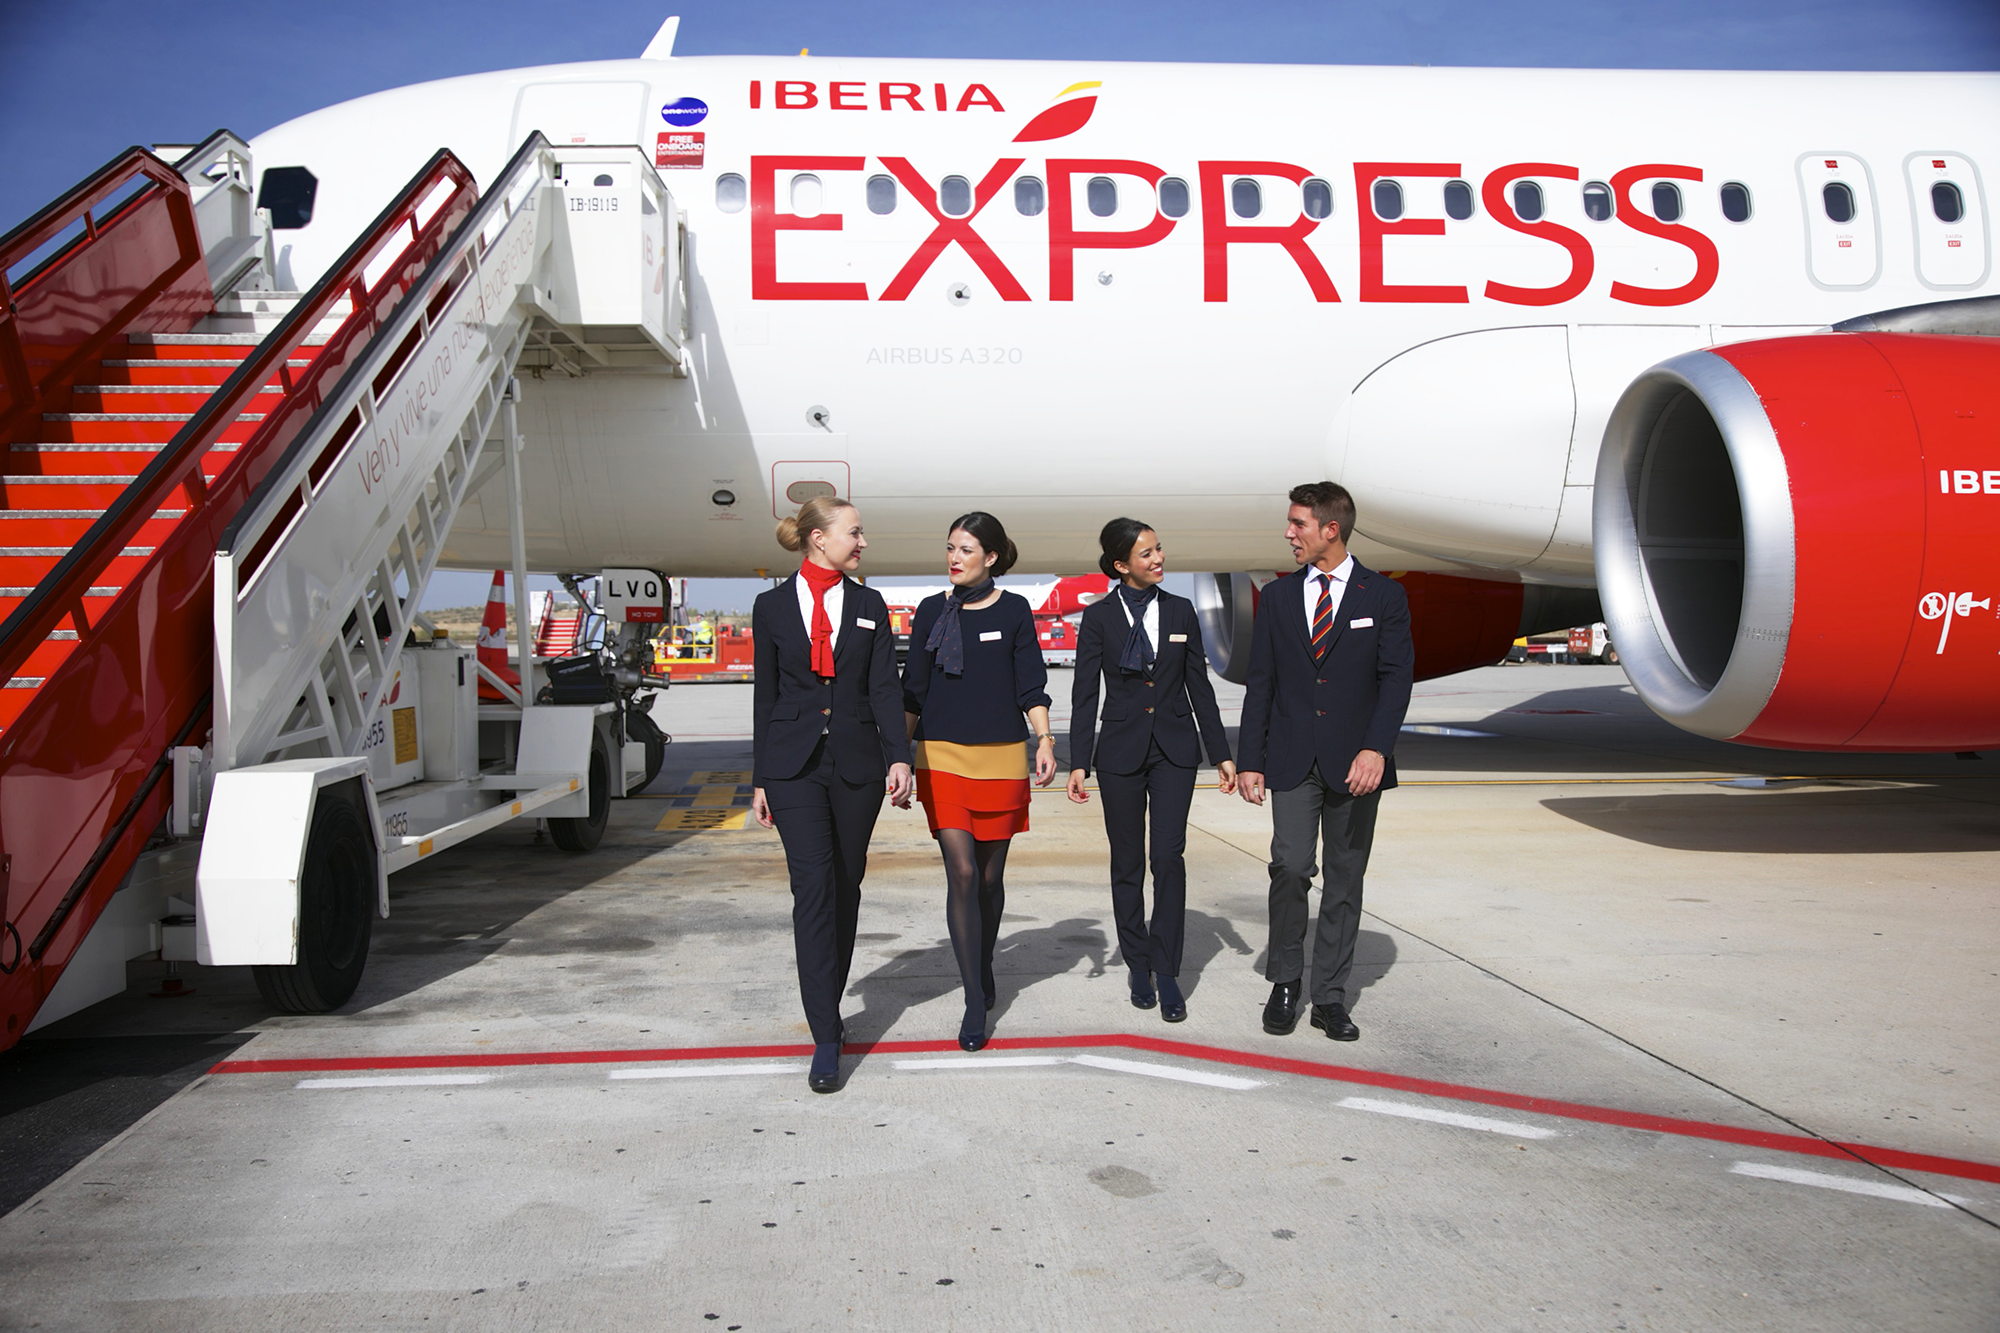 Iberia Express cabin crew on tarmac